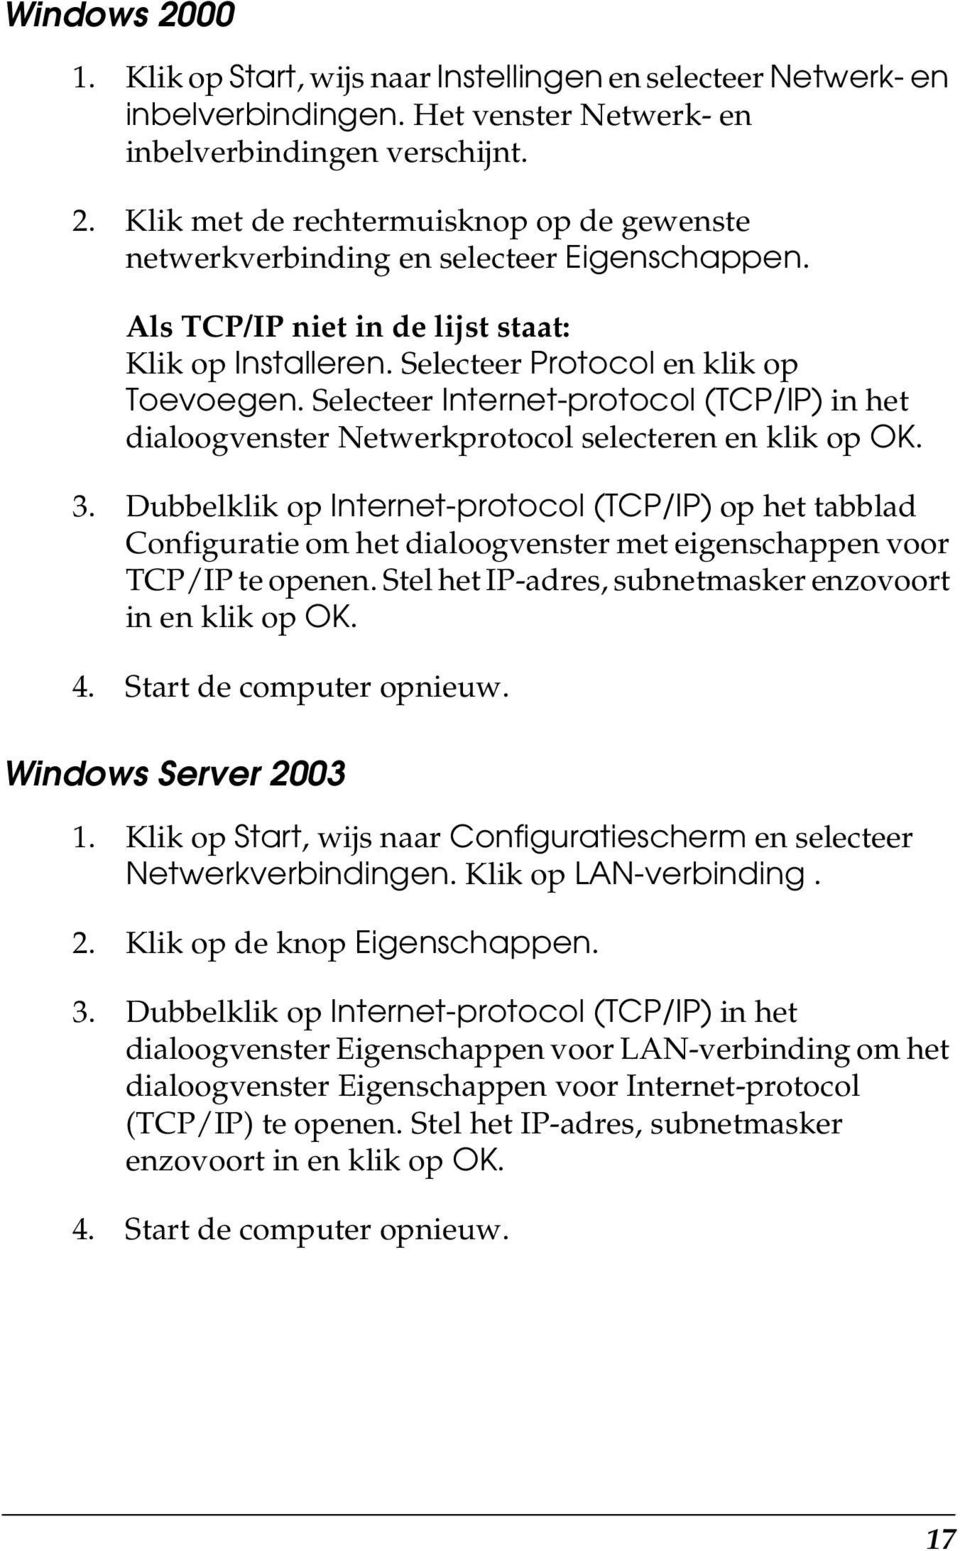 Dubbelklik op Internet-protocol (TCP/IP) op het tabblad Configuratie om het dialoogvenster met eigenschappen voor TCP/IP te openen. Stel het IP-adres, subnetmasker enzovoort in en klik op OK. 4.